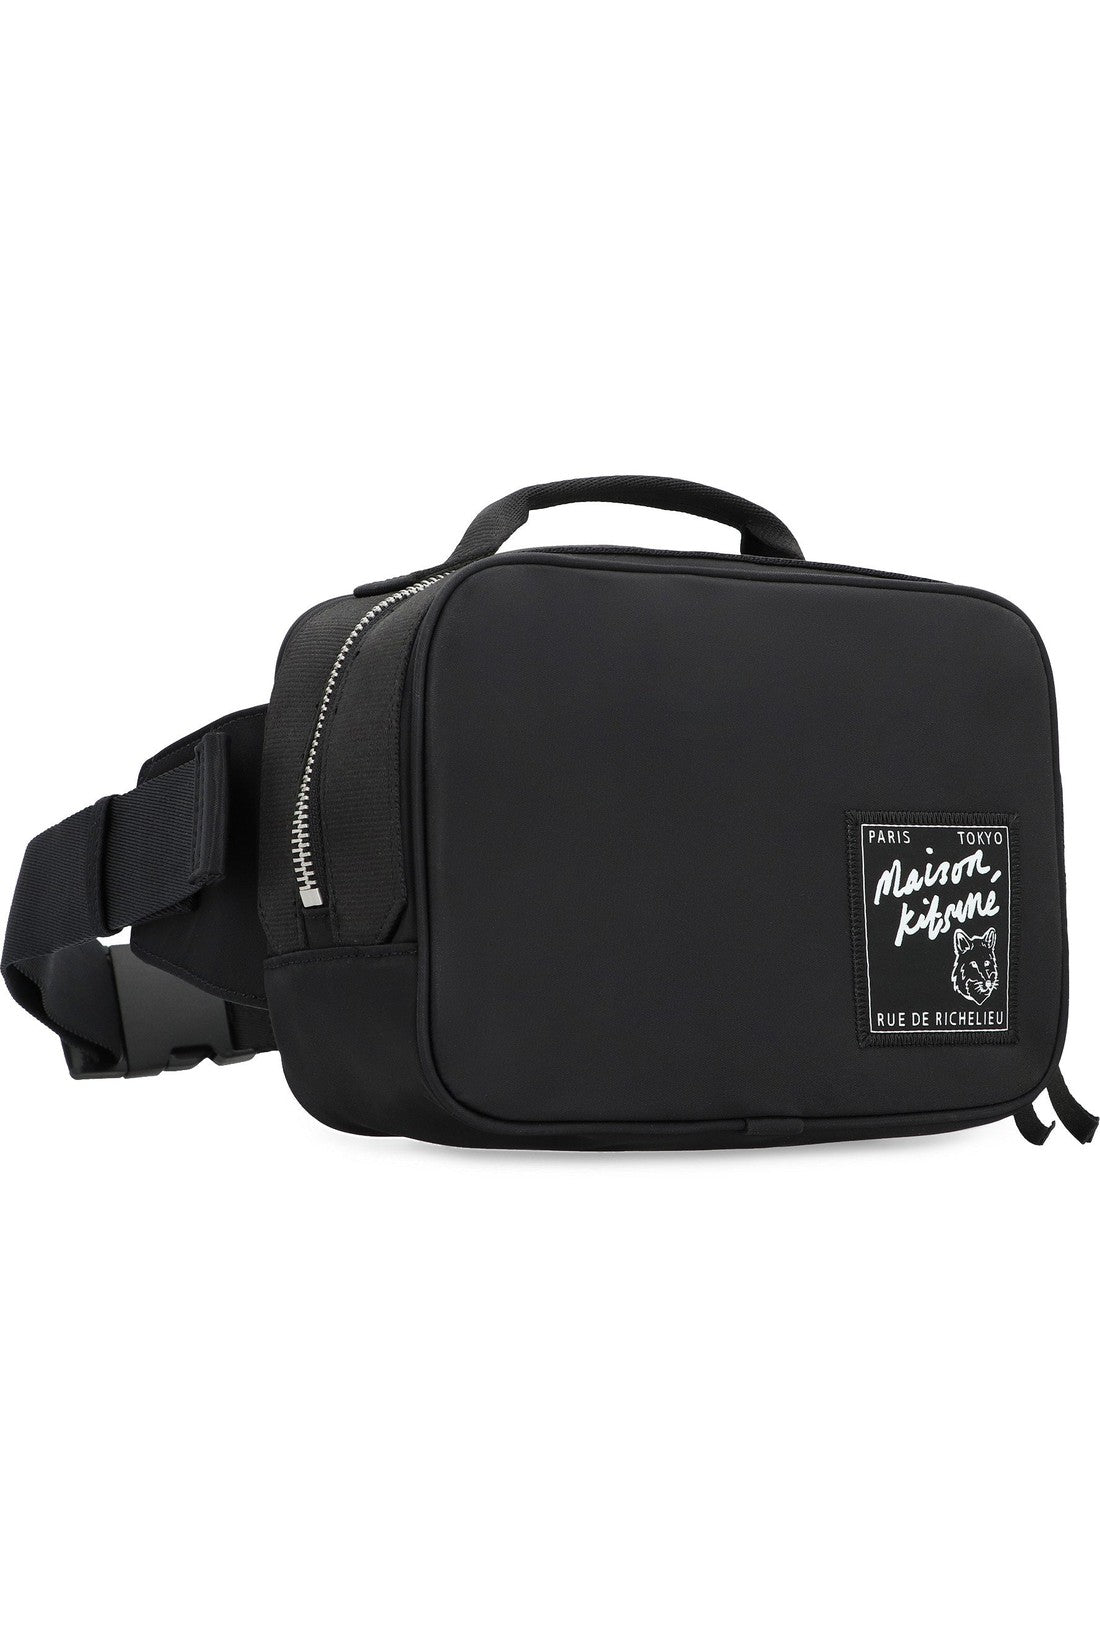 Maison Kitsuné-OUTLET-SALE-The Traveller nylon belt bag-ARCHIVIST